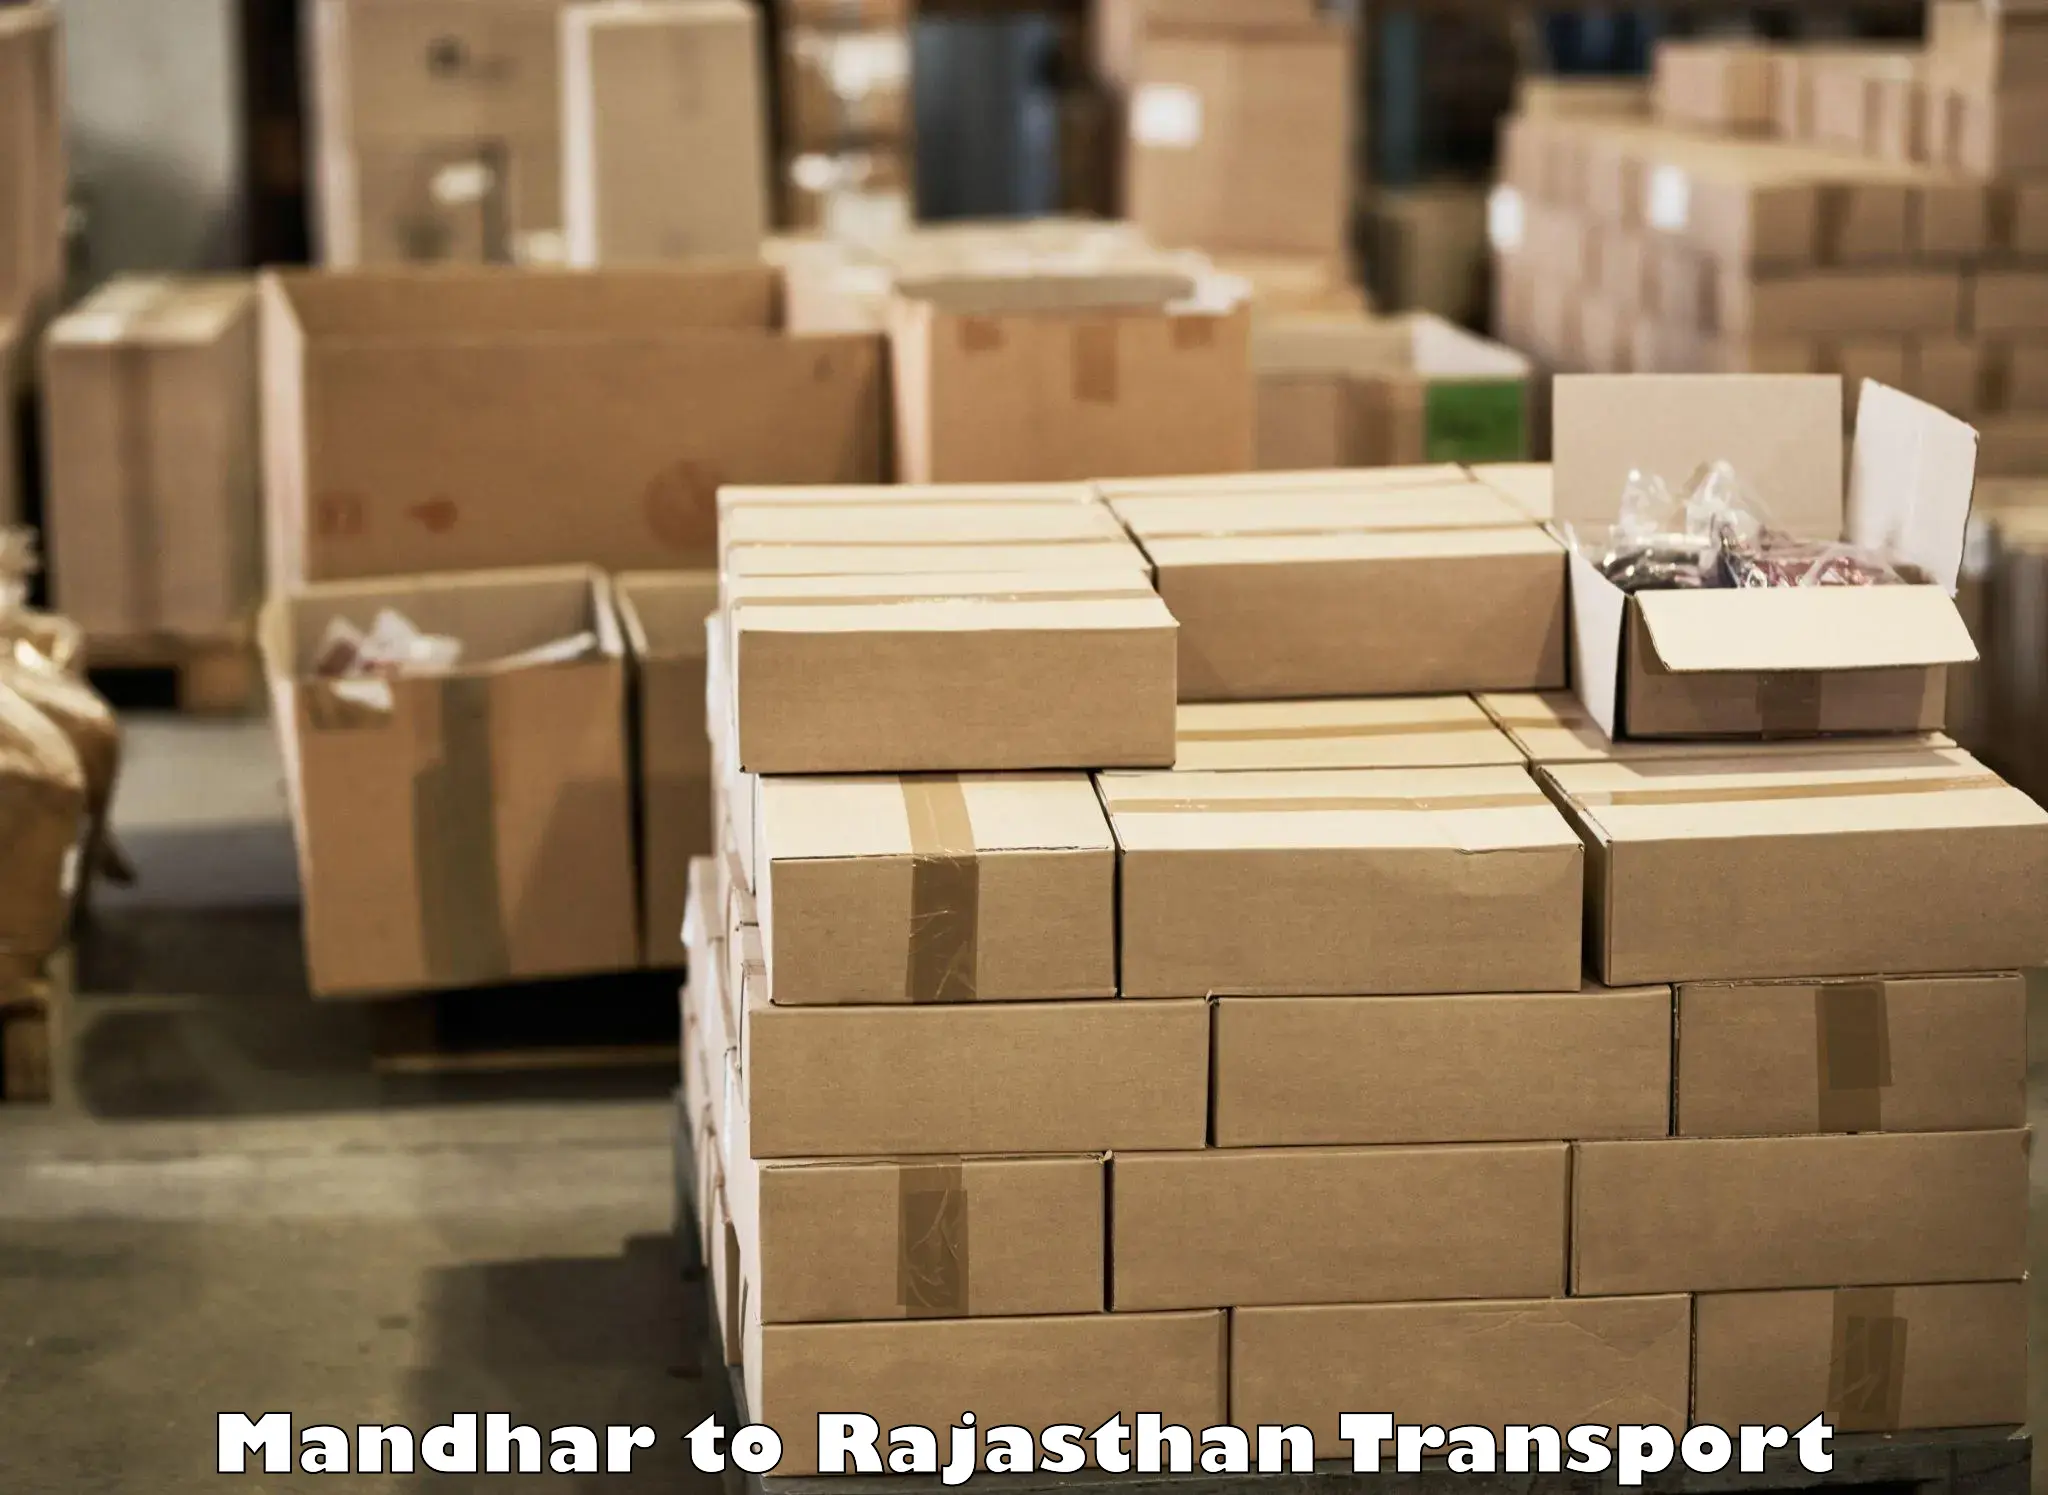 Transport shared services Mandhar to Hindaun